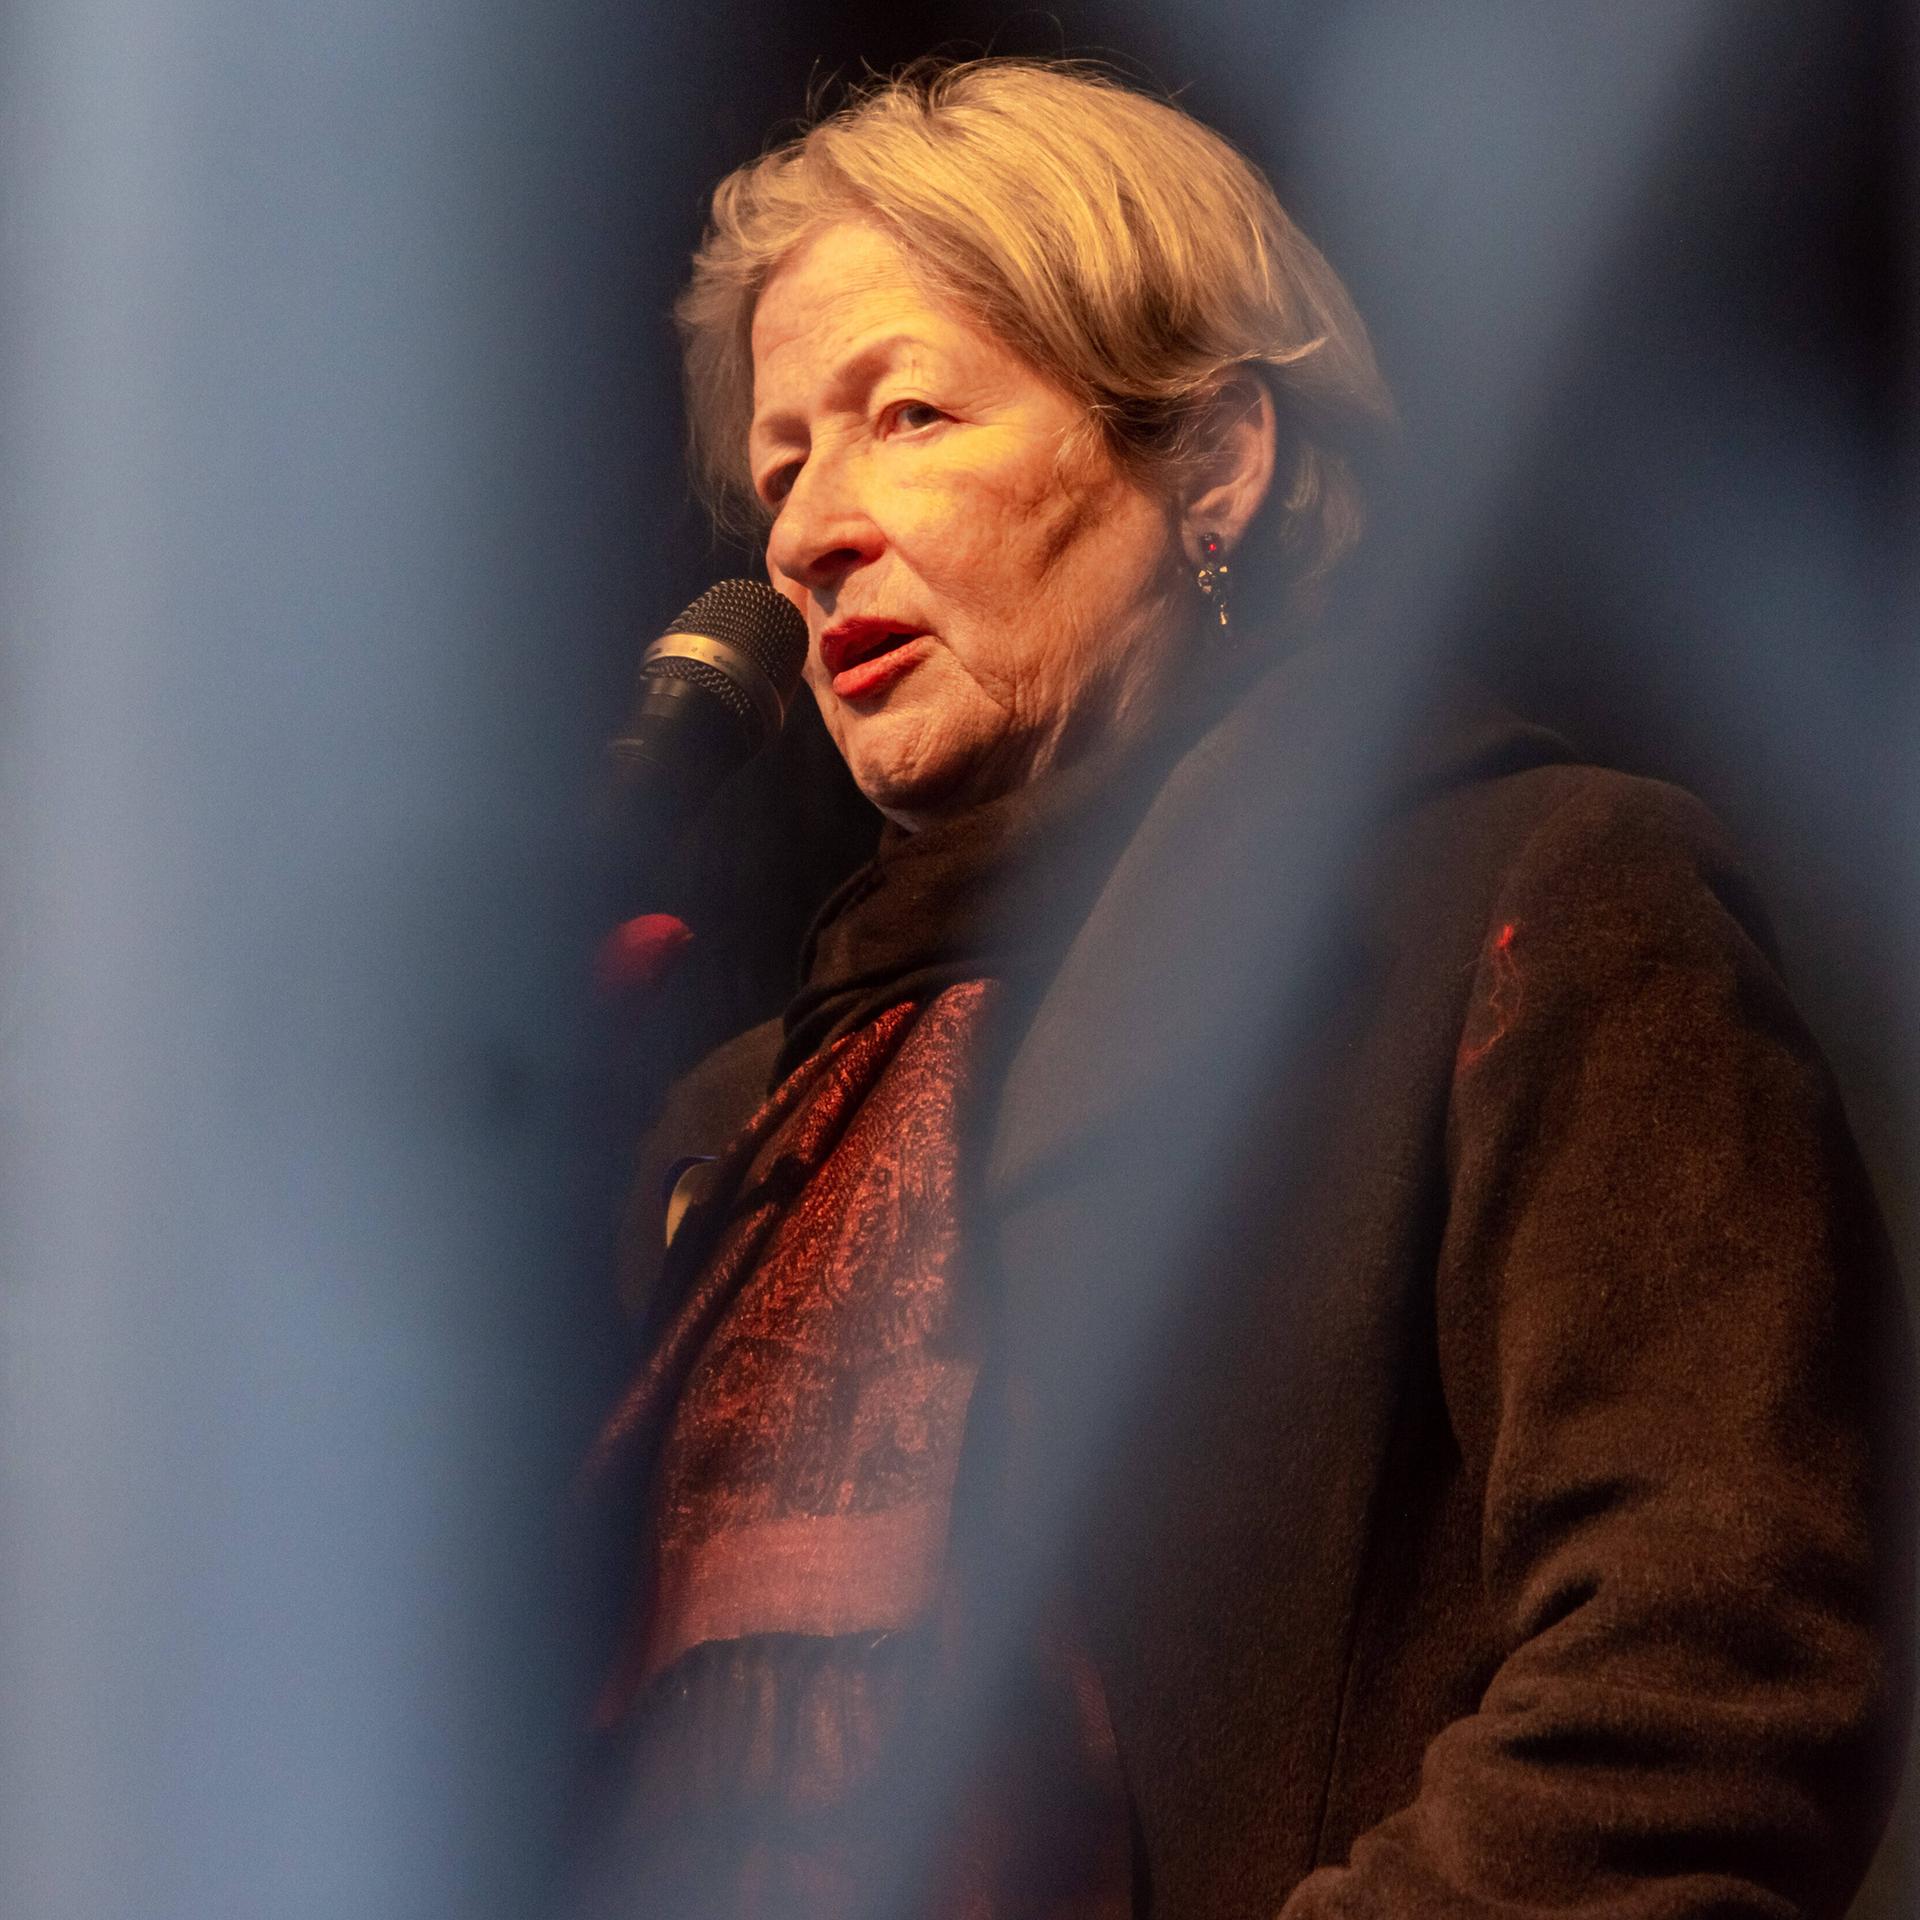 Die österreichische Schriftstellerin Susanne Scholl spricht bei einer Demonstration auf einer Bühne in ein Mikrofon 